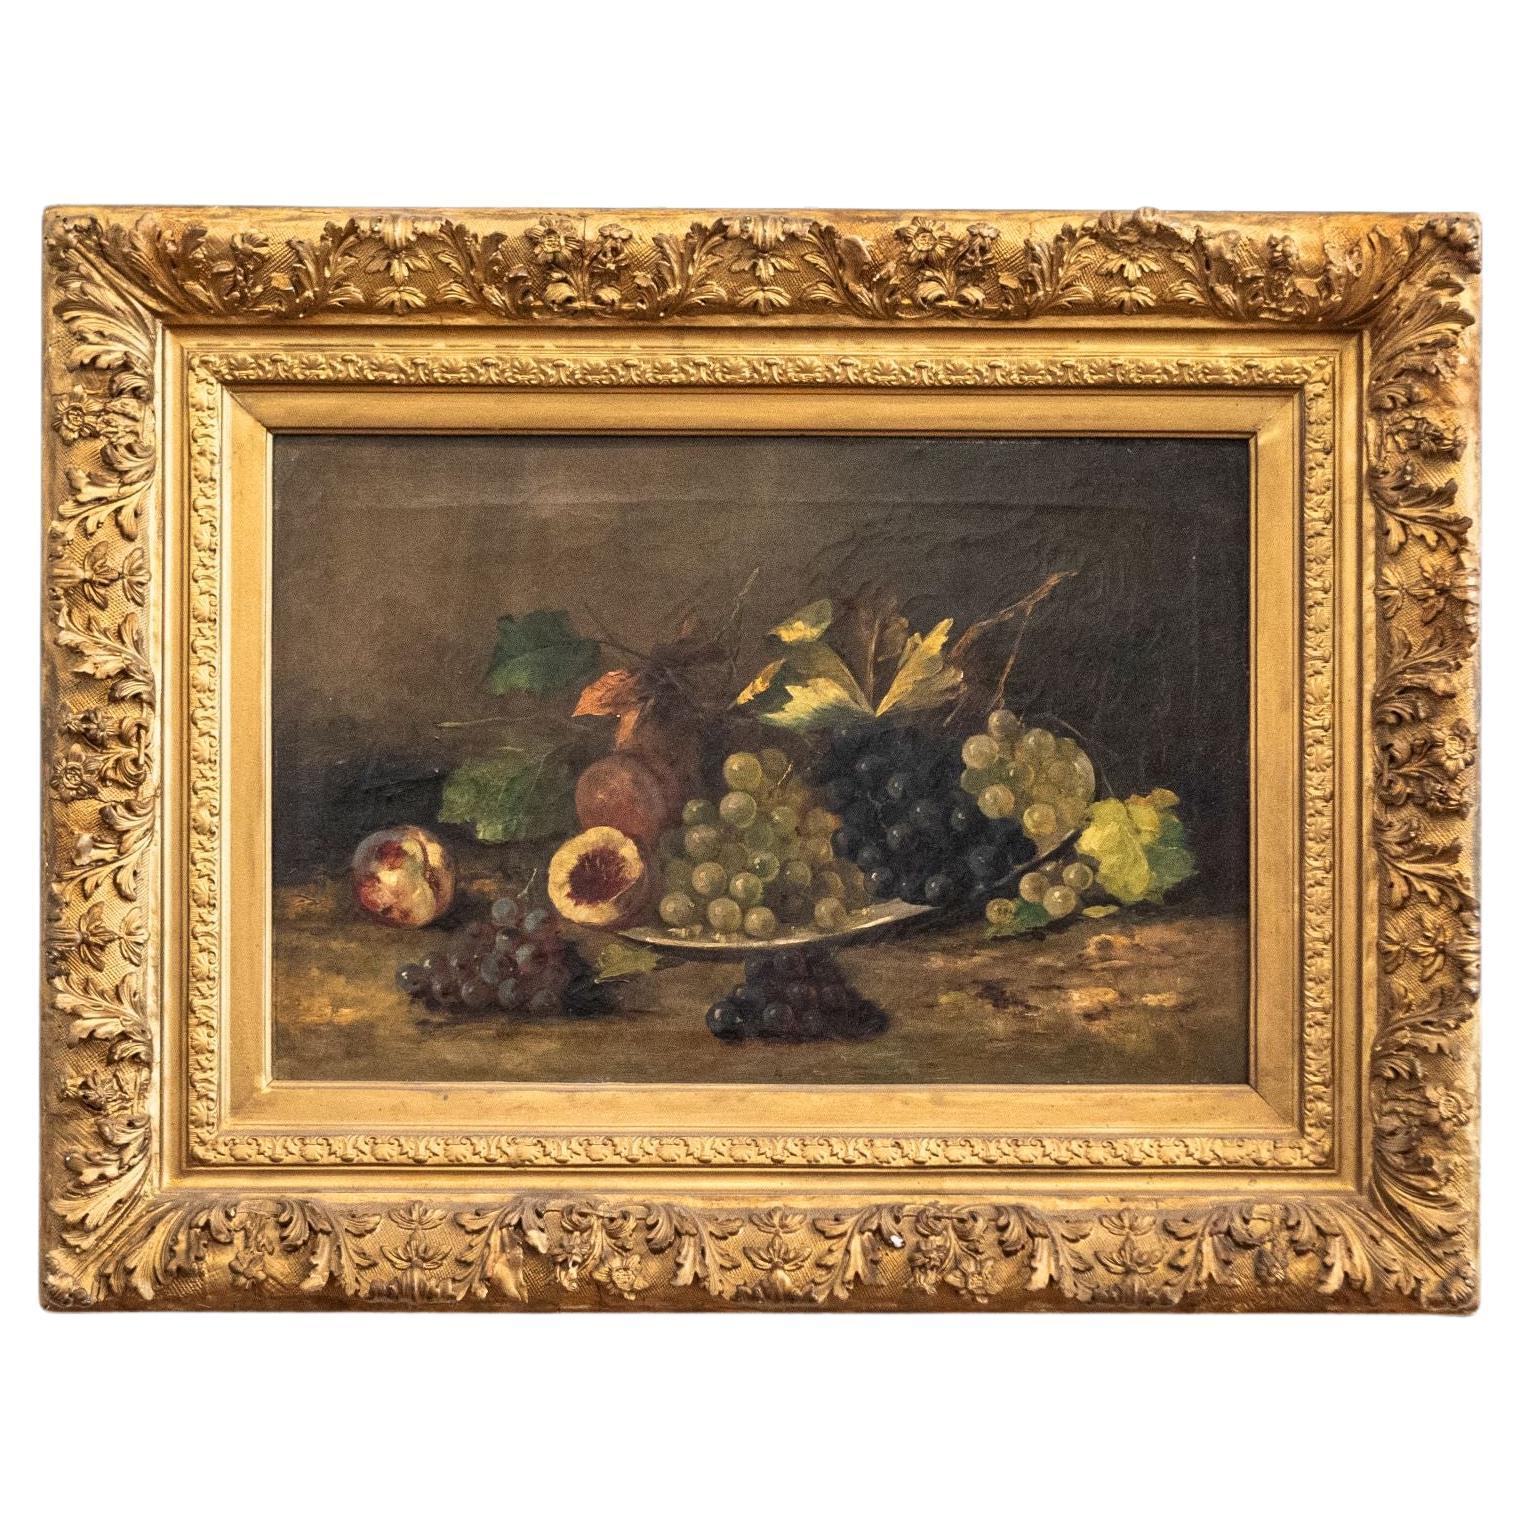 Französisch Giltwood gerahmt 19. Jahrhundert Öl auf Leinwand Gemälde Darstellung von Früchten